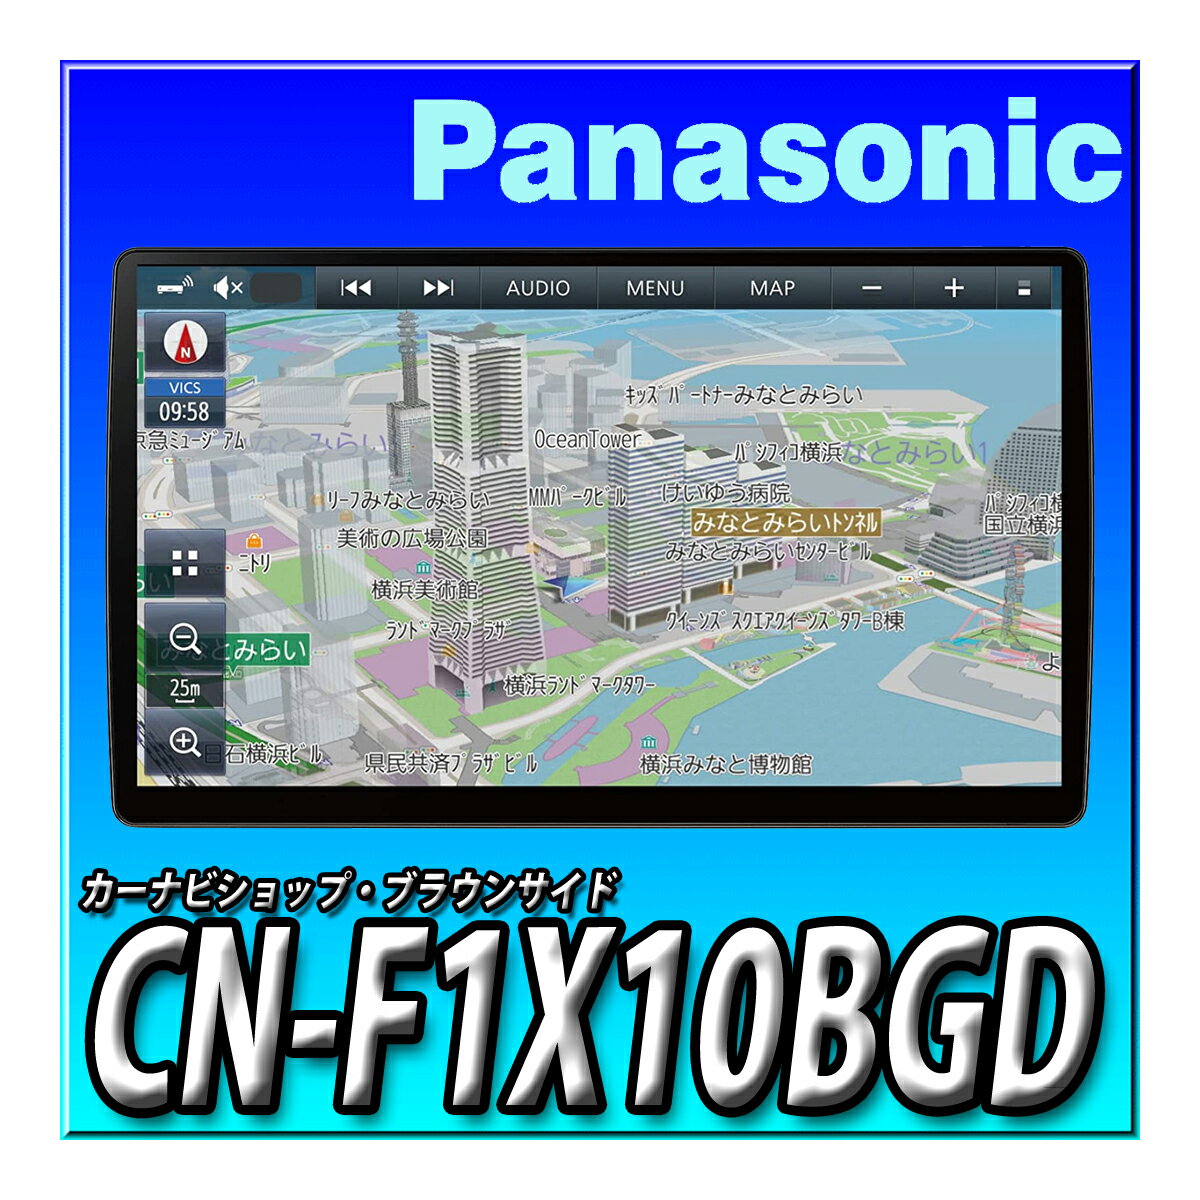 CN-F1X10BGD パナソニック(Panasonic) カーナビ ストラーダ 10インチ 有機ELディスプレイ 490車種に対応 フルセグ 無料地図更新 ブルーレイ ドラレコ連携